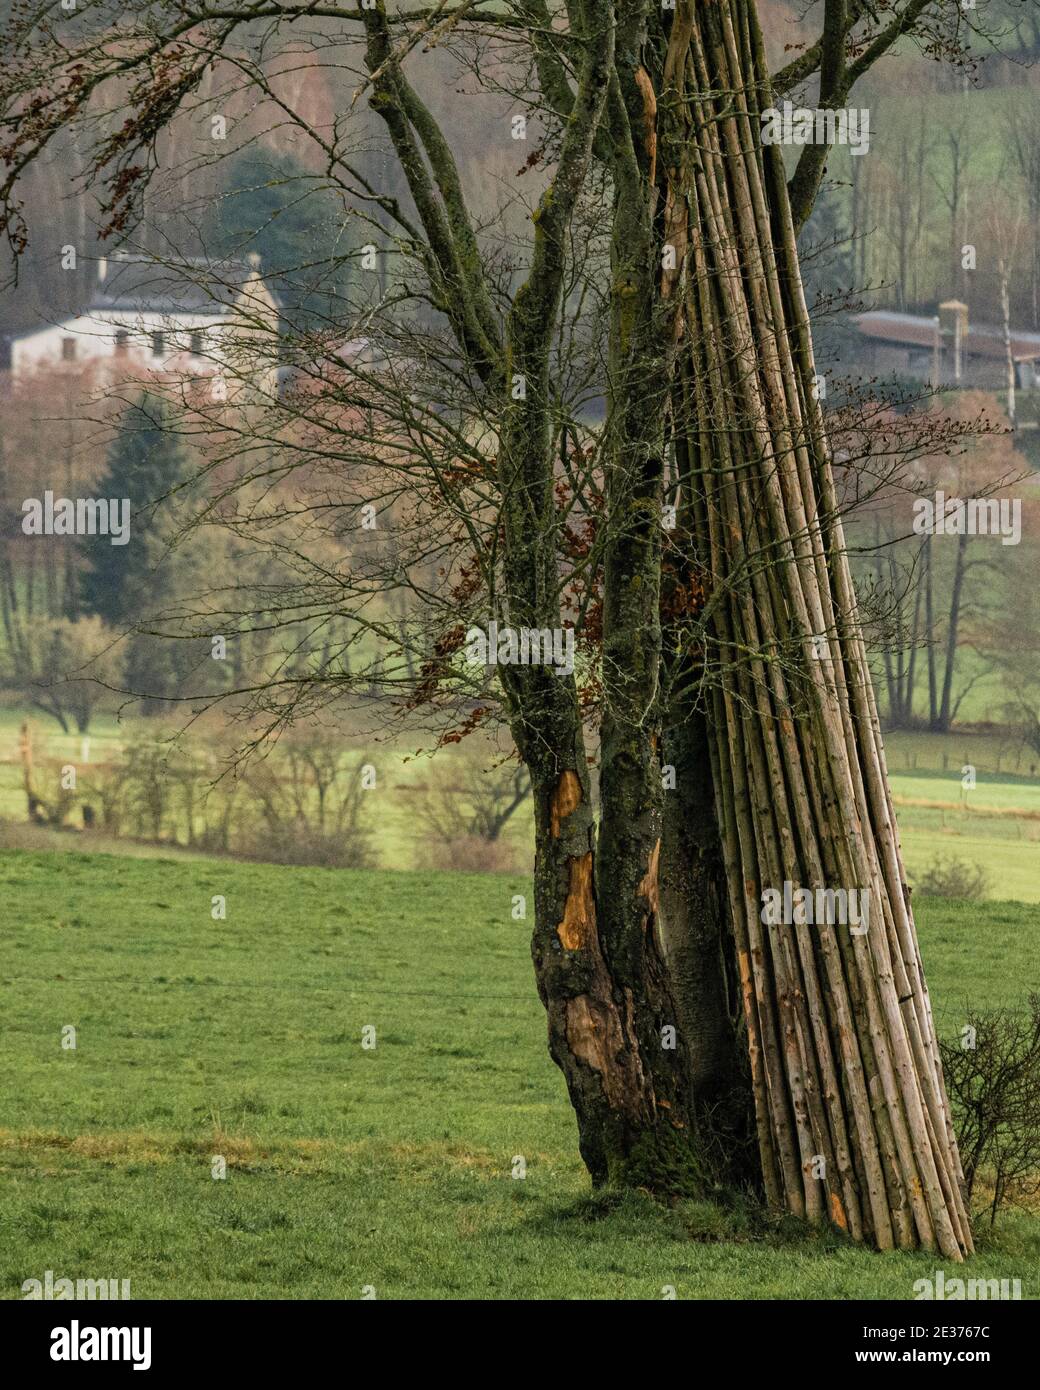 Un fagot de rondins posés contre un arbre Foto Stock